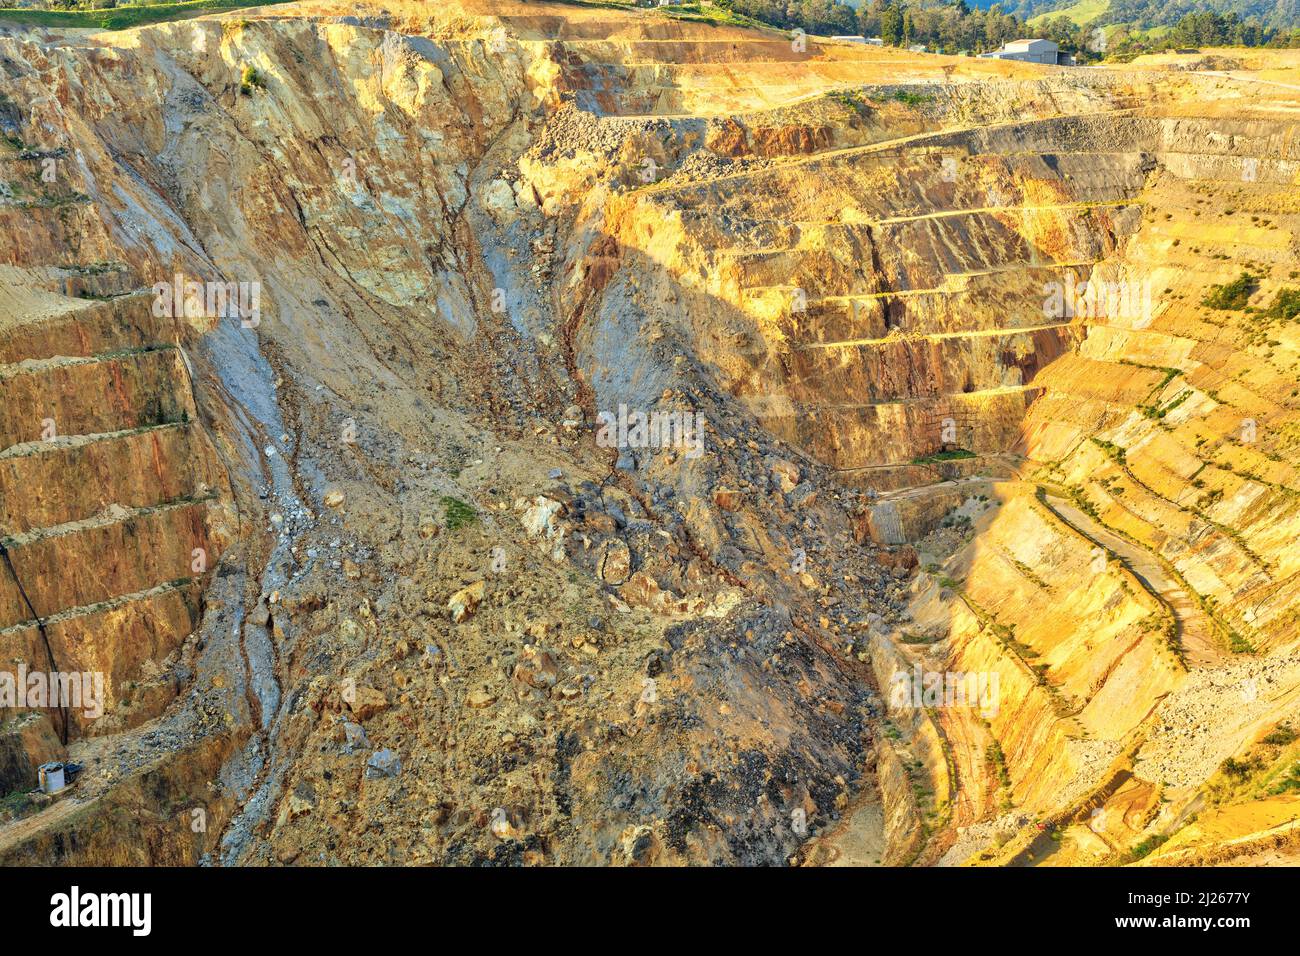 Blick in eine Tagebau-Goldmine mit Terrassen zum Transport von Erz. Eine Wand der Grube ist durch einen Schlupf eingestürzt. Martha Mine, Waihi, Neuseeland Stockfoto